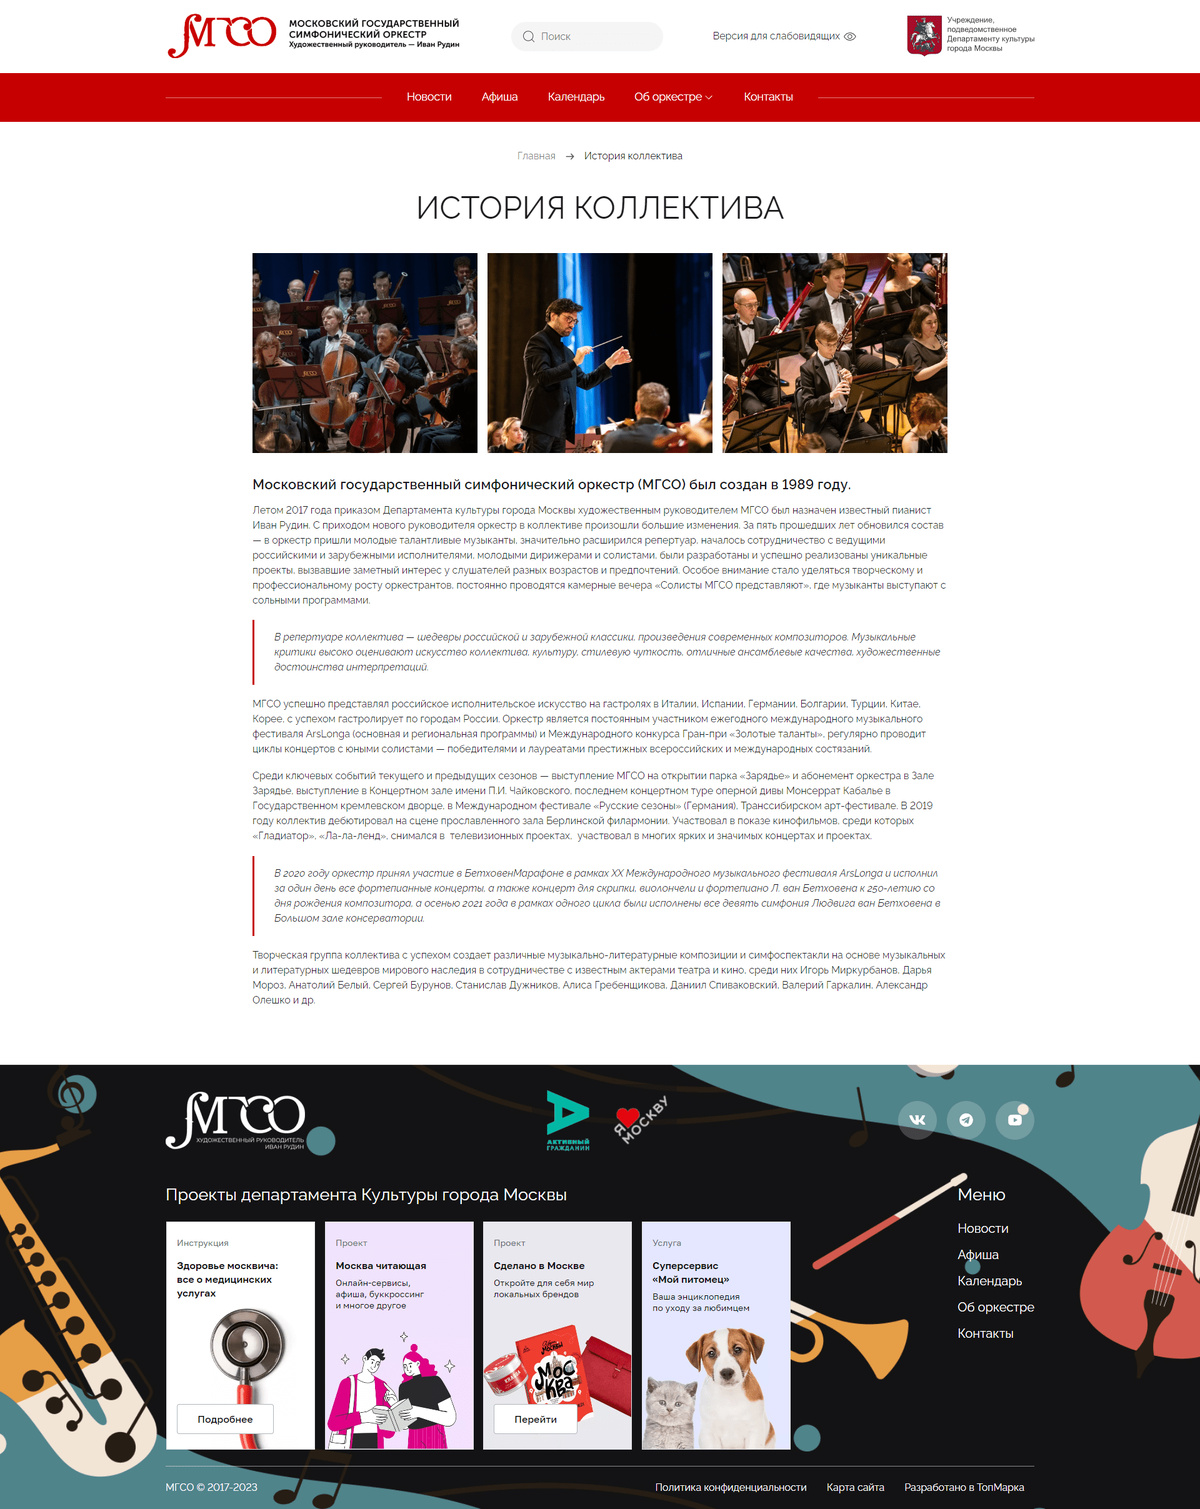 Разработка сайта для Московского государственного симфонического оркестра (МГСО)